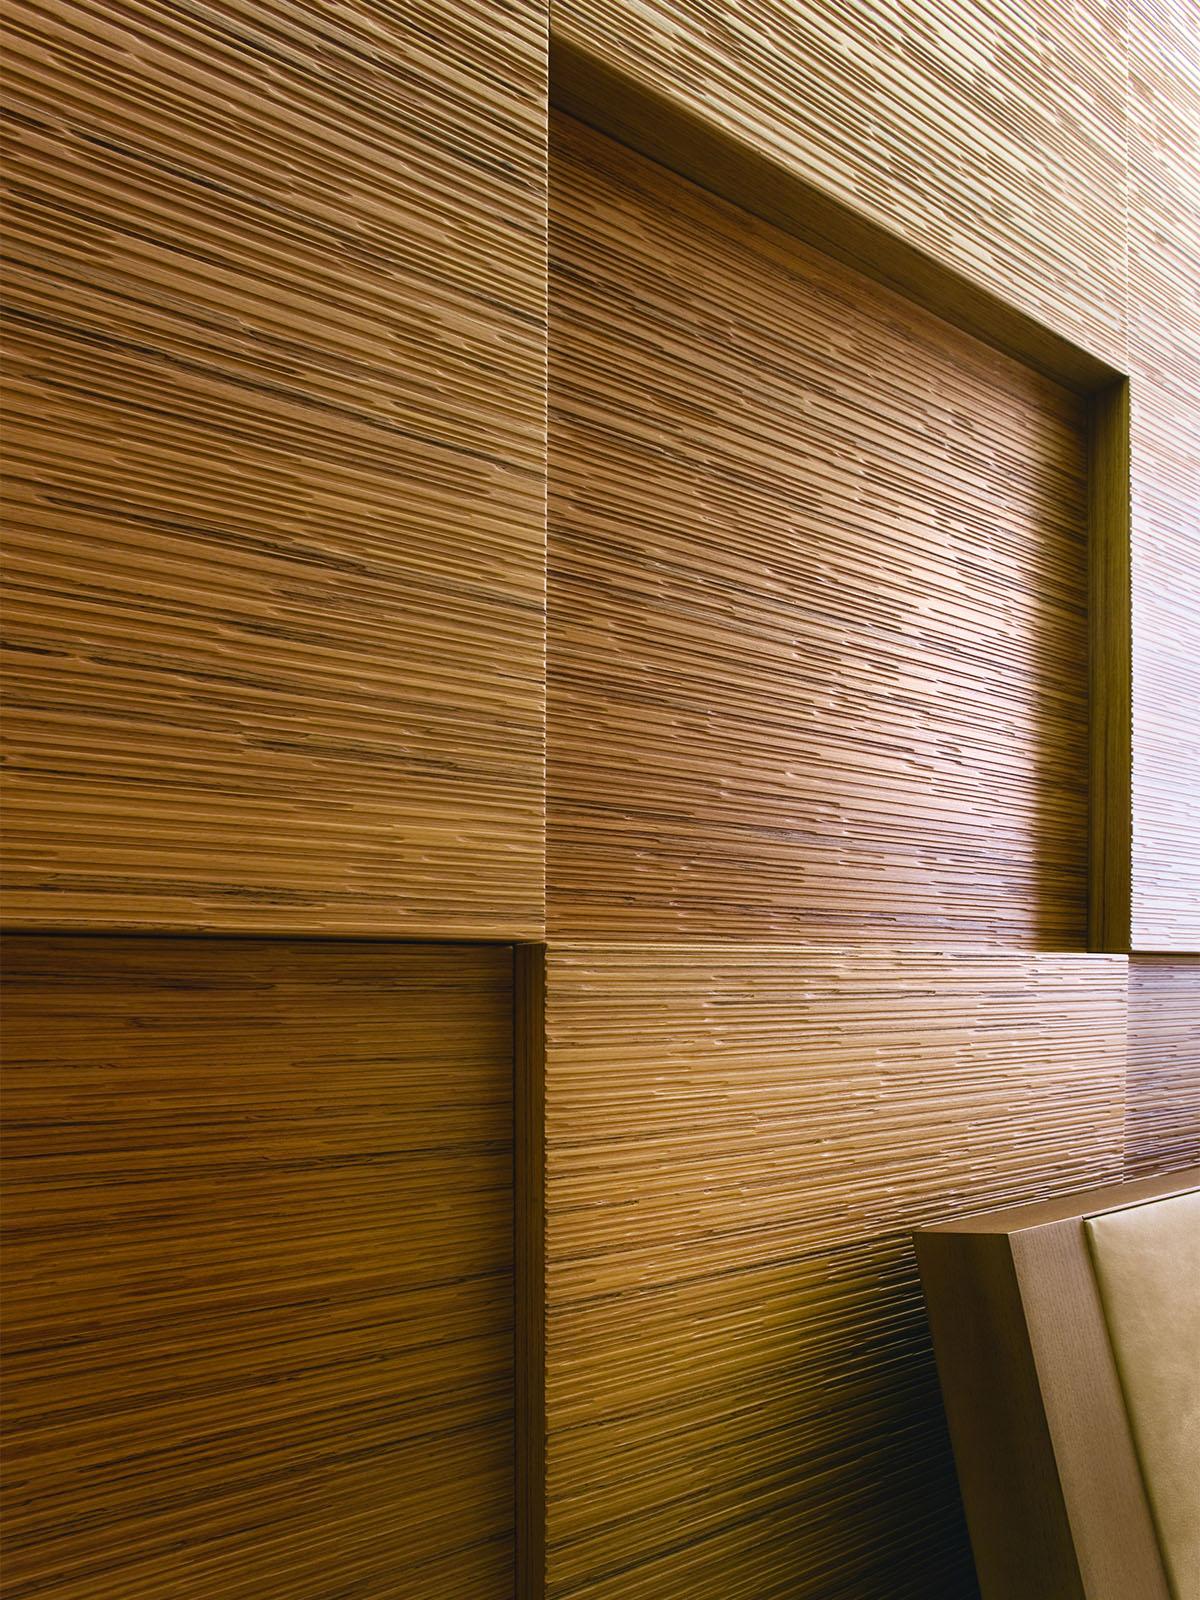 Отделка деревом материал. Шпонированные панели Topperfo Micro Ulme Stone Edition Acoustic Wood Panel. Панели Decor Acoustic. Wall cladding панель стеновая. 3в панели дерево Леруа.